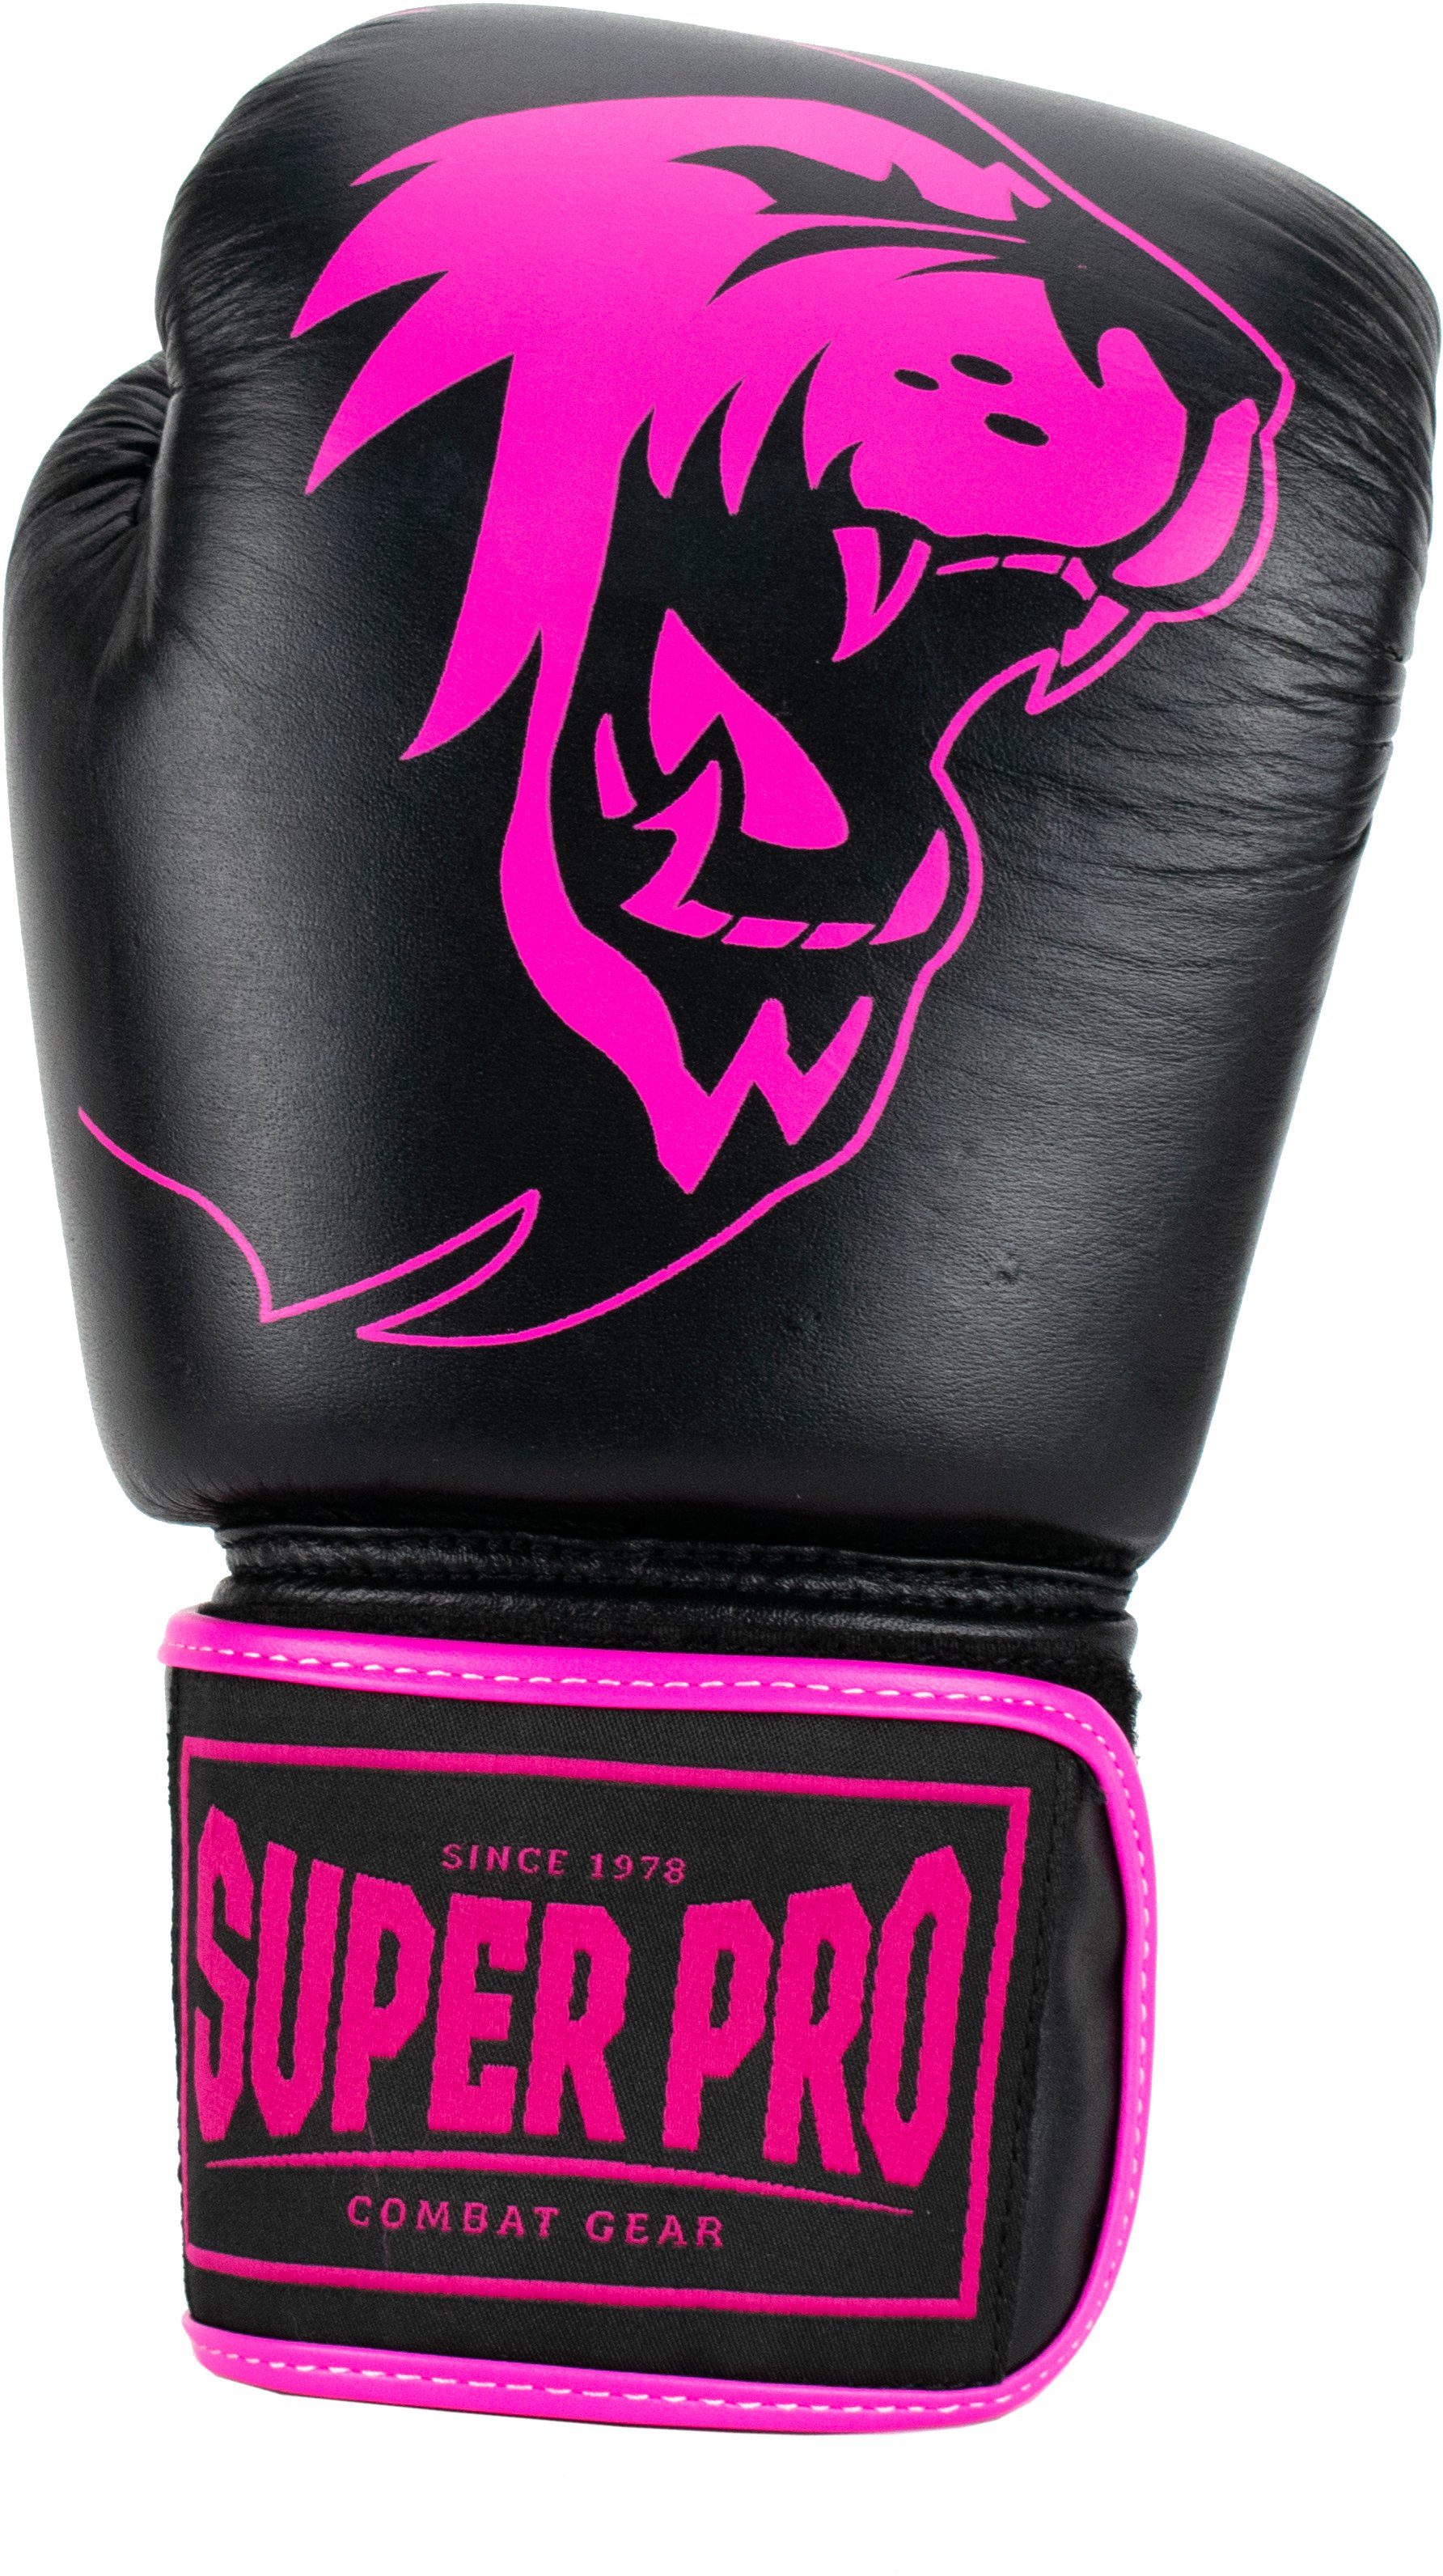 Pro Boxhandschuhe Super pink/schwarz Warrior